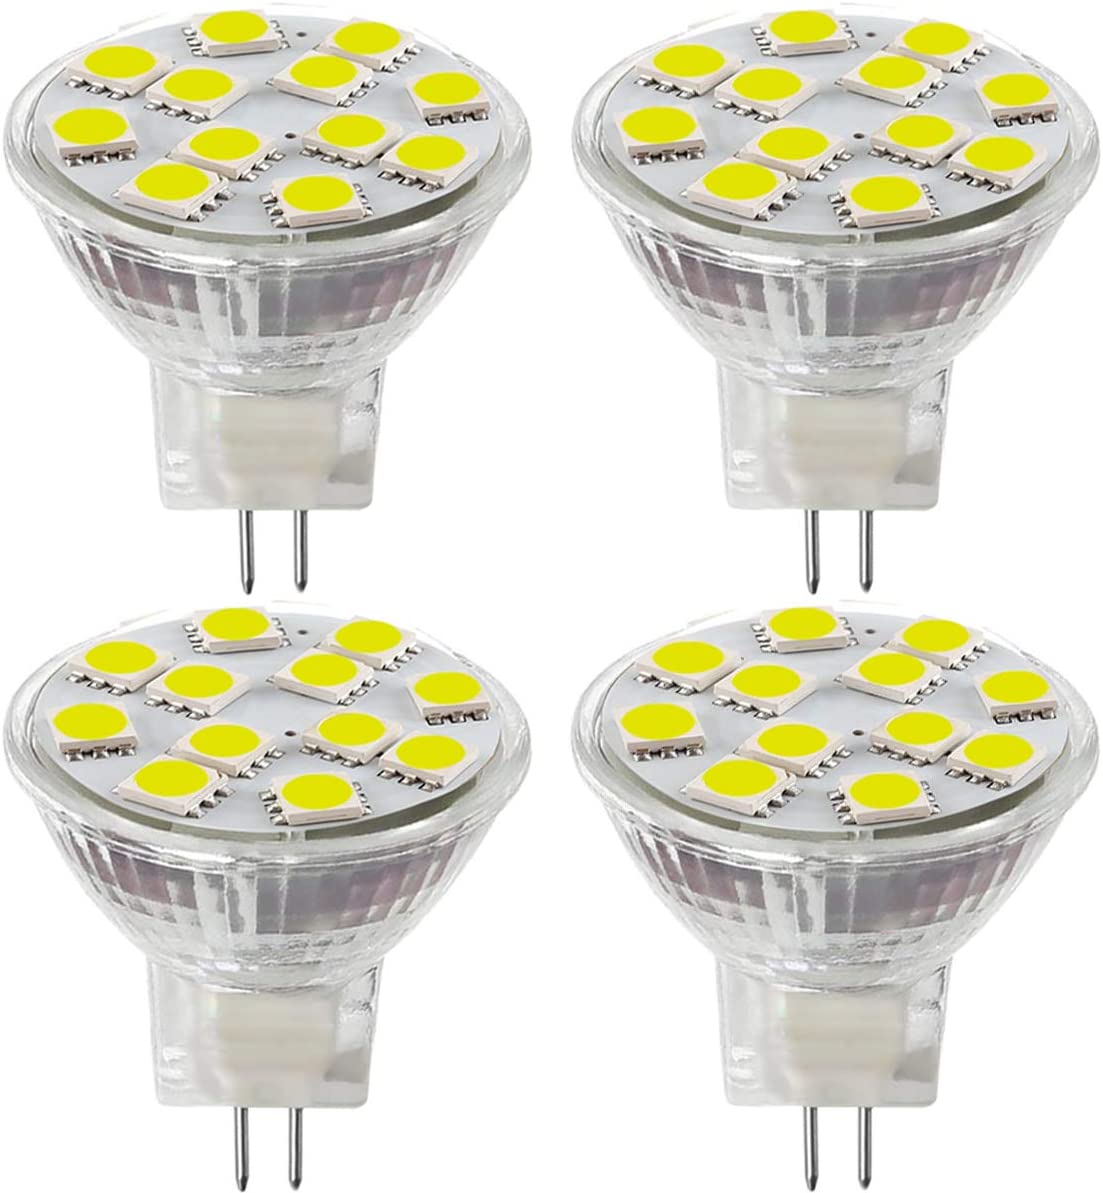 2 x MR11 GU4 12v  2.4w LED Lamp Lightbulb  Warm White Complete with Holder 